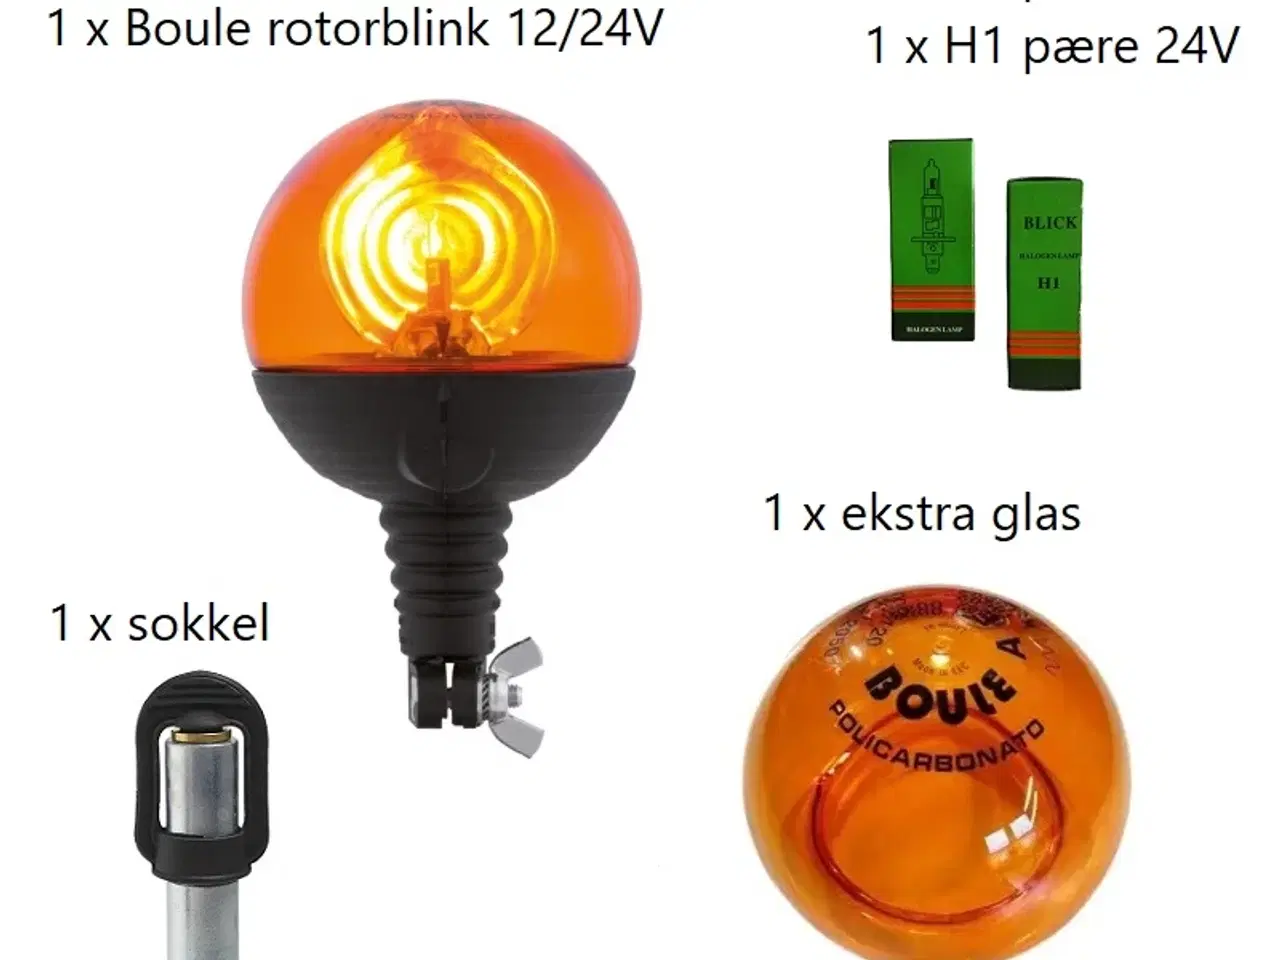 Billede 2 - Glas til boule rotorblink